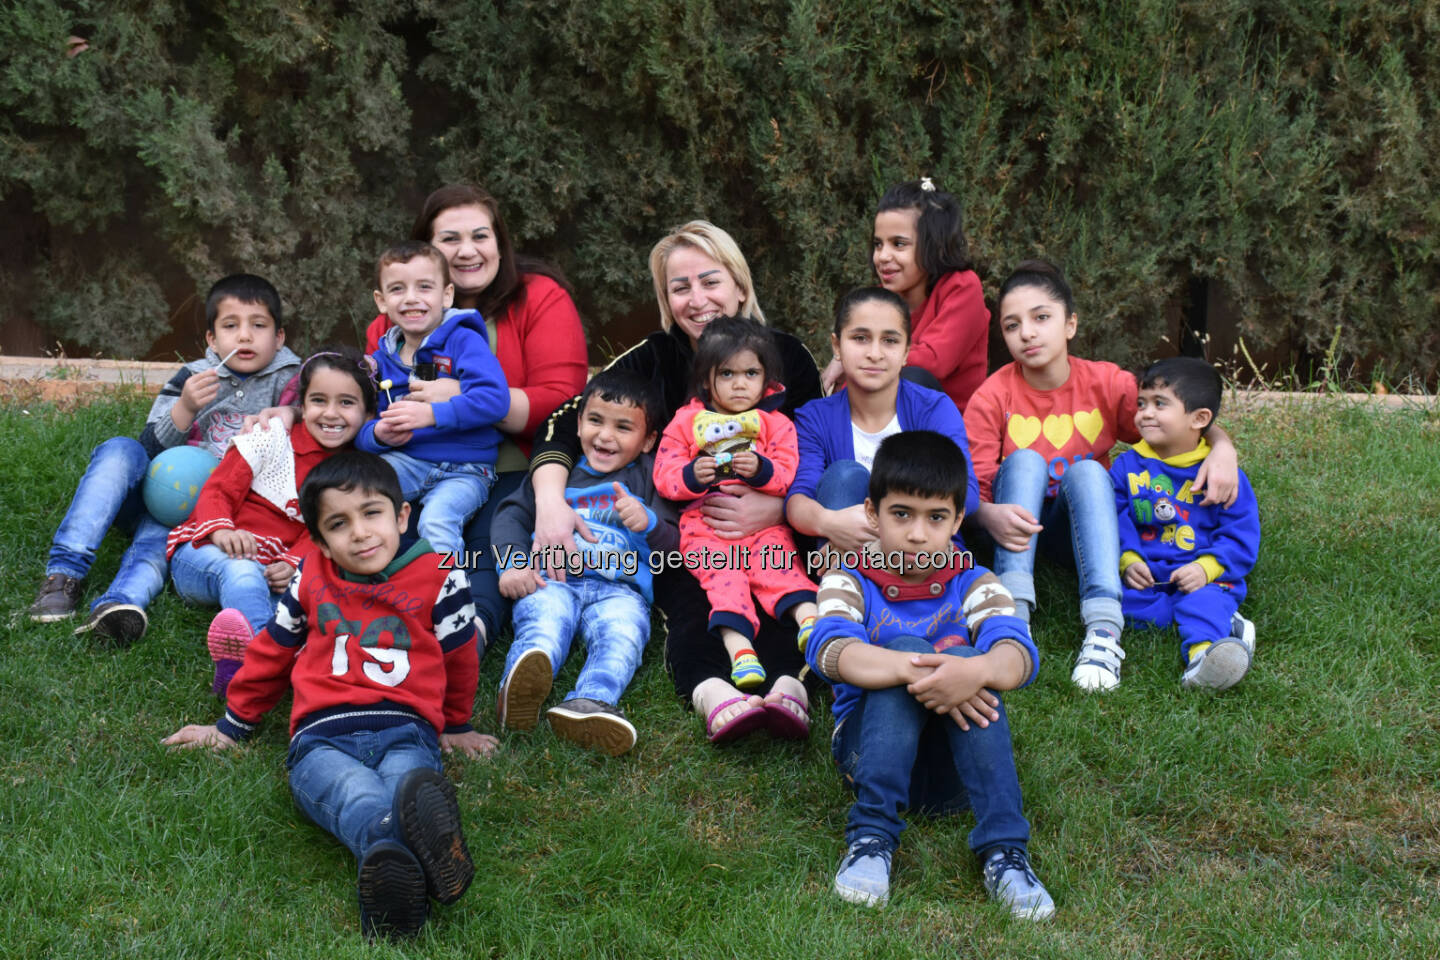 Endlich zuhause! Die ersten 12 Kriegswaisen sind mit ihren SOS-Kinderdorf-Müttern ins SOS-Kinderdorf Saboura bei Damaskus eingezogen. Insgesamt werden dort 80 Kinder ein liebevolles, bleibendes Zuhause und auch psychologische Unterstützung bekommen. - SOS Kinderdorf: Syrien: Zweites SOS-Kinderdorf bei Damaskus in Betrieb (Fotocredit: SOS-Kinderdorf)